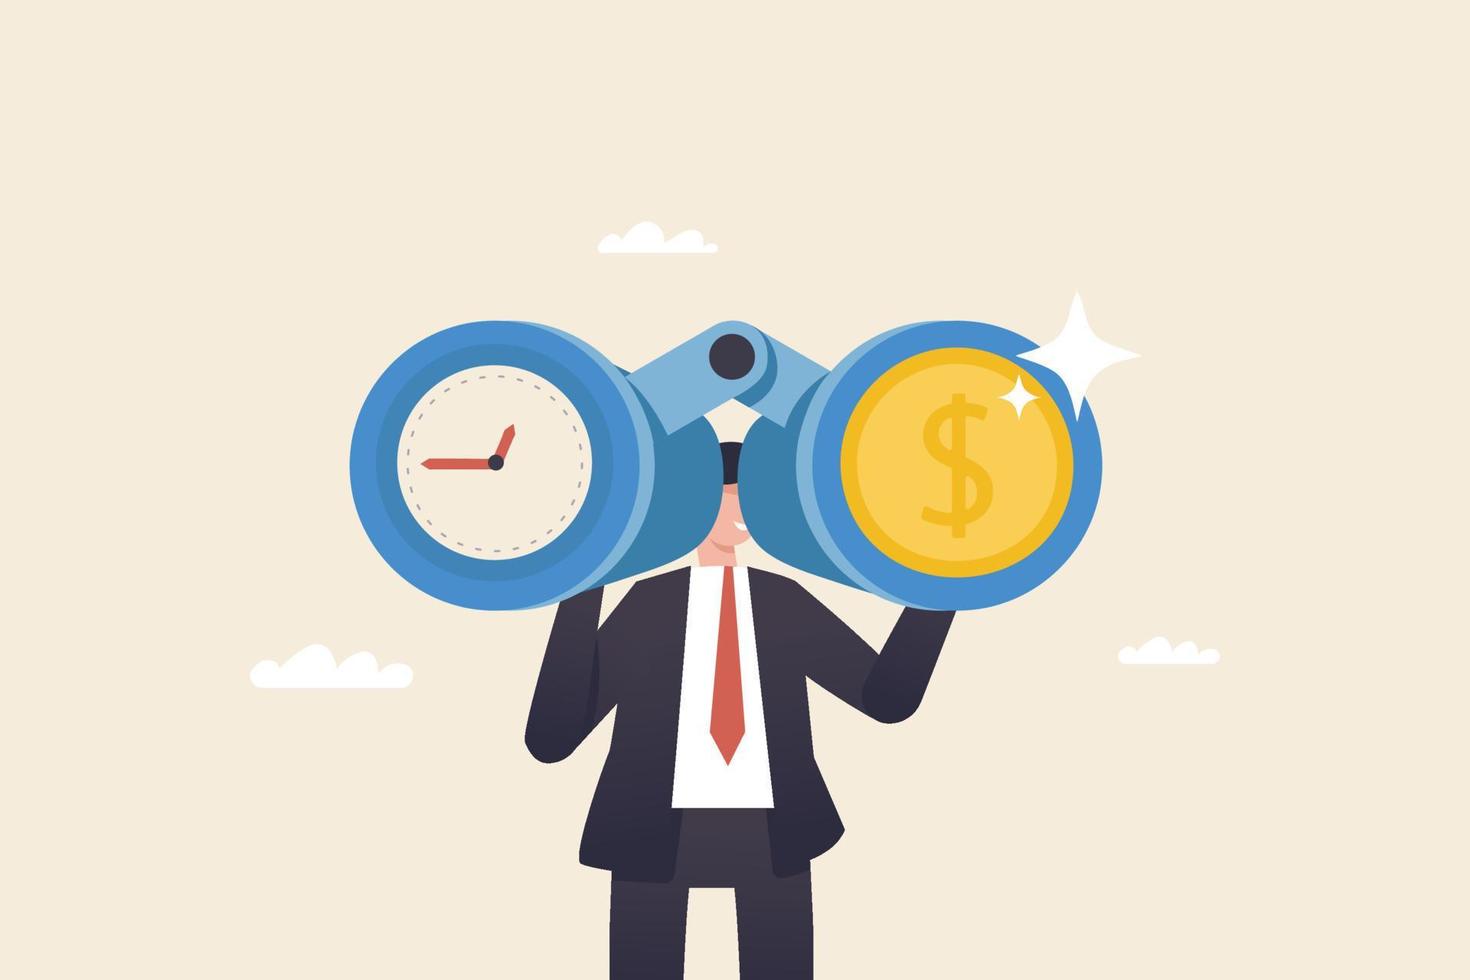 tijd en geld zijn belangrijke concepten voor investeerders. Tips voor tijdbeheer voor financiën. zakenman kijkt door een verrekijker om tijd en muntgeld te vinden. vector